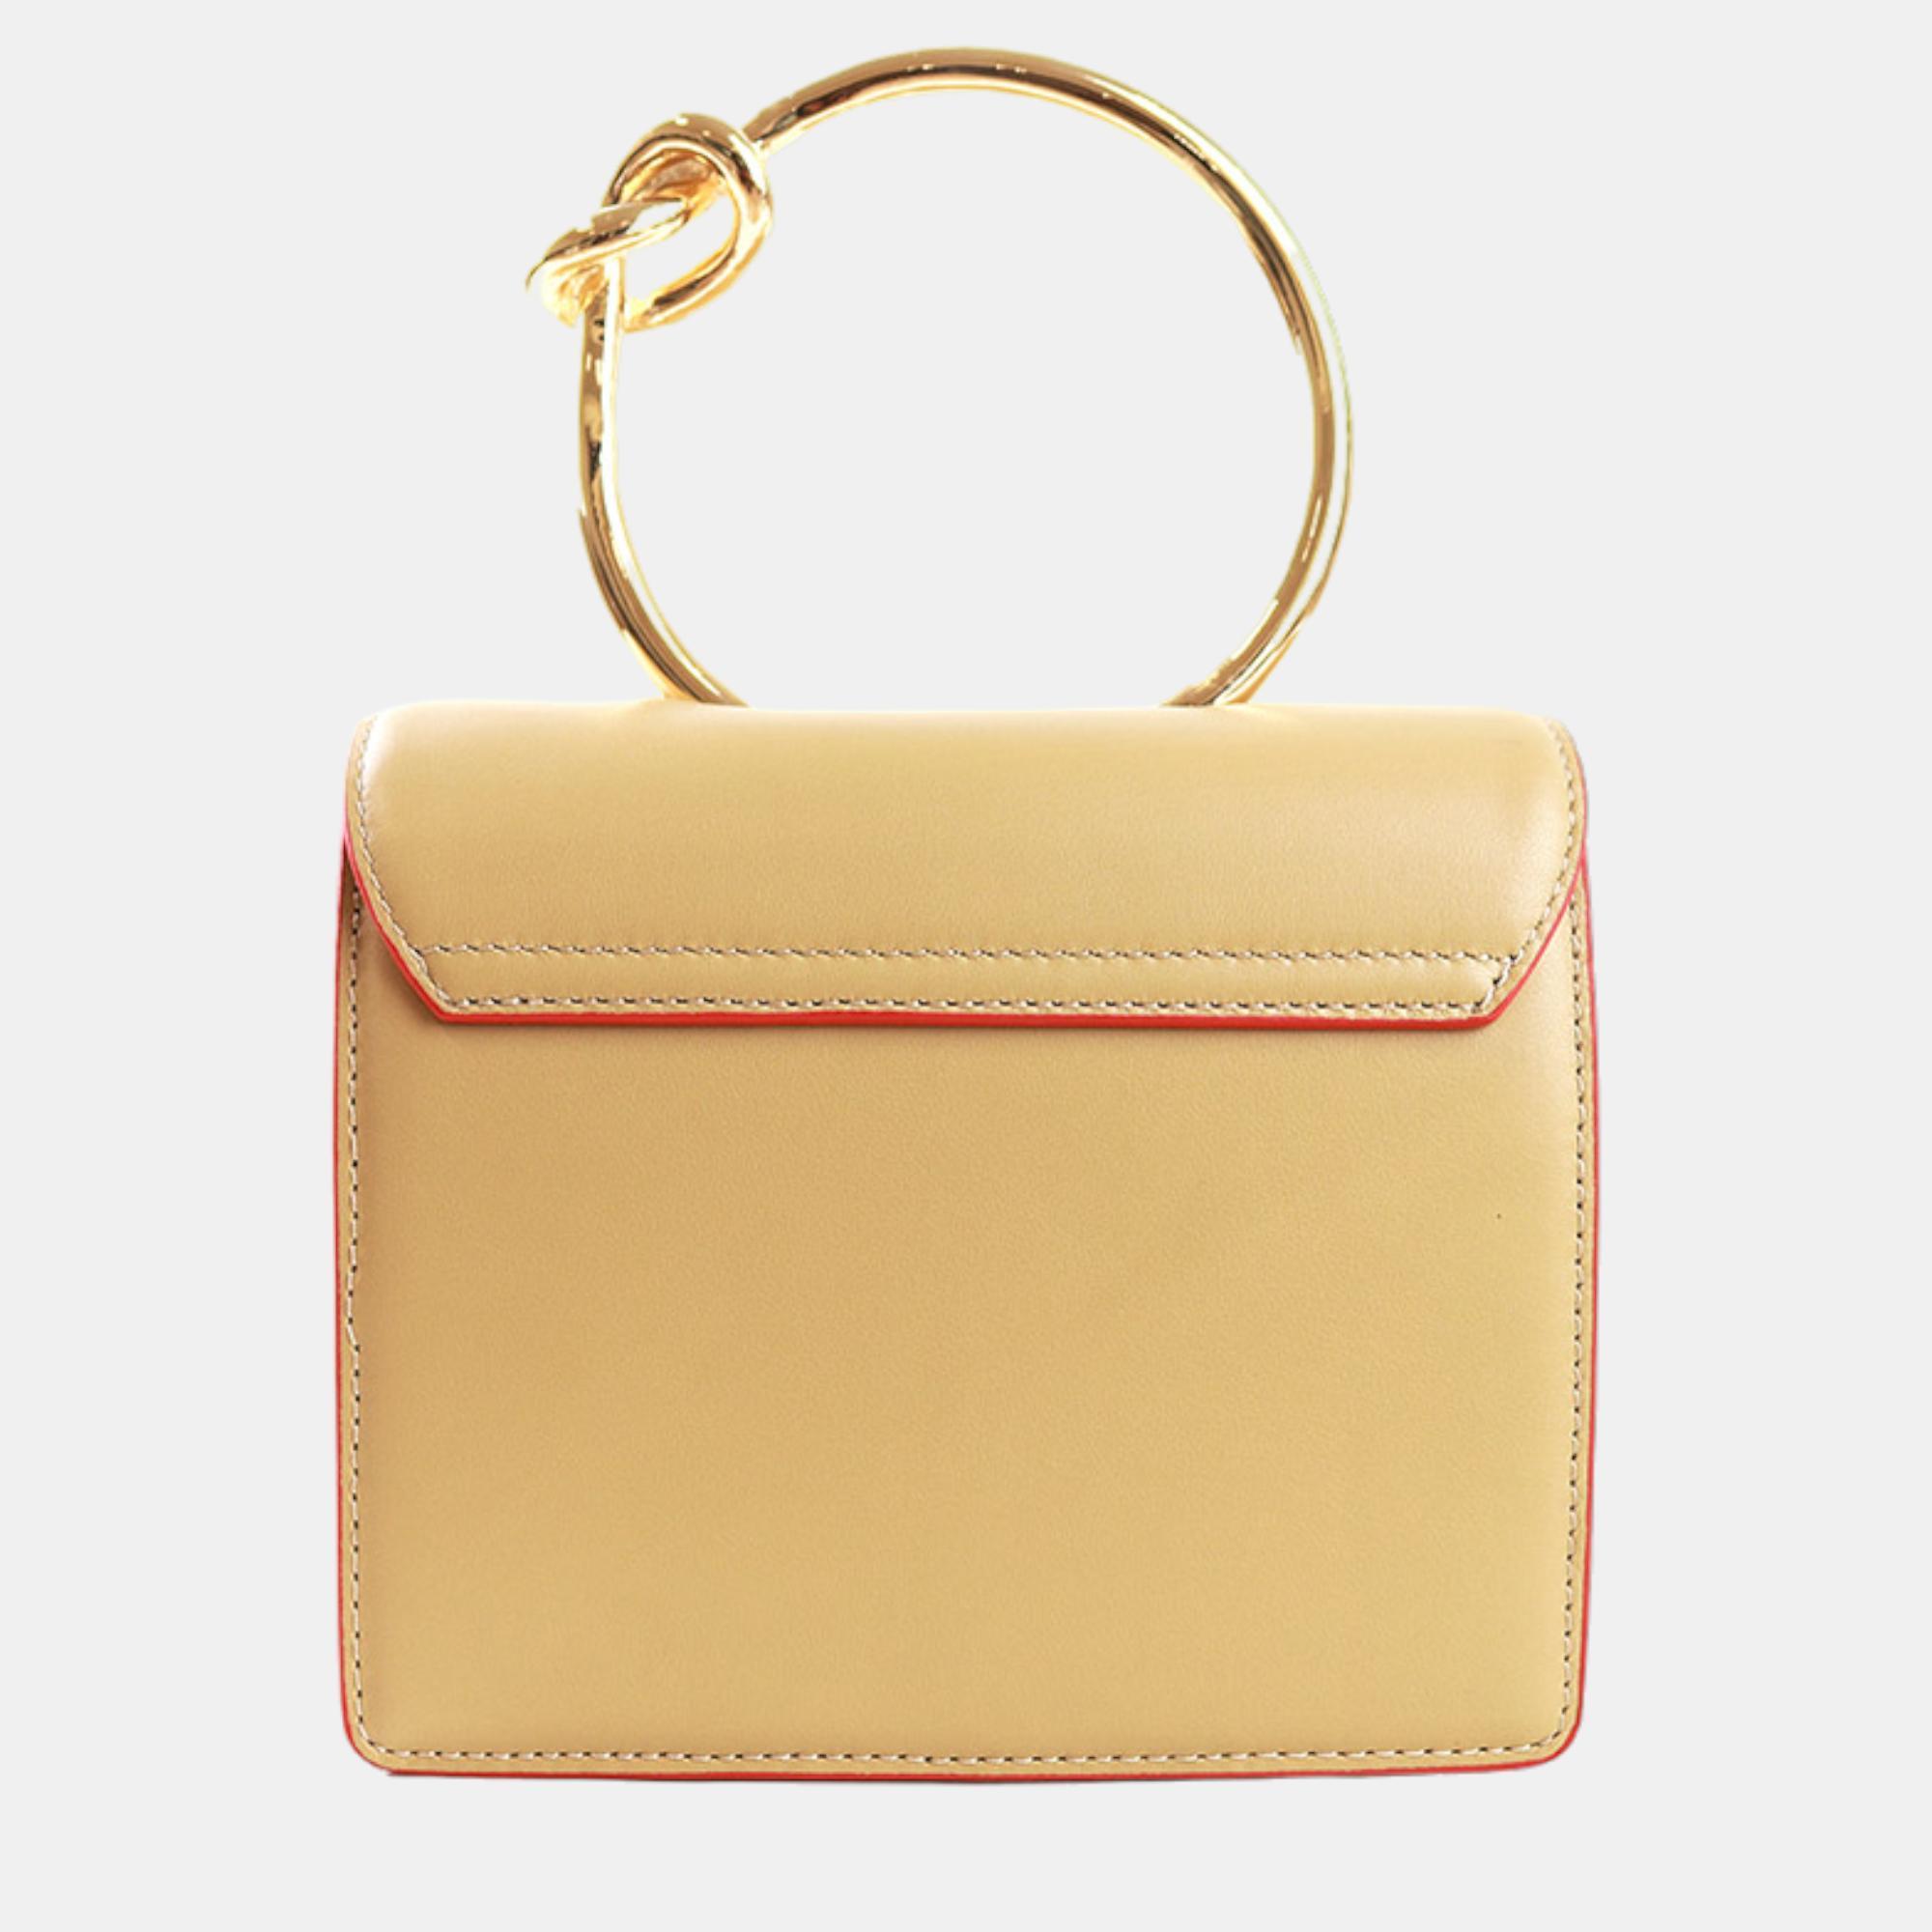 Charriol Yellow Leather ZENITUDE Handbag